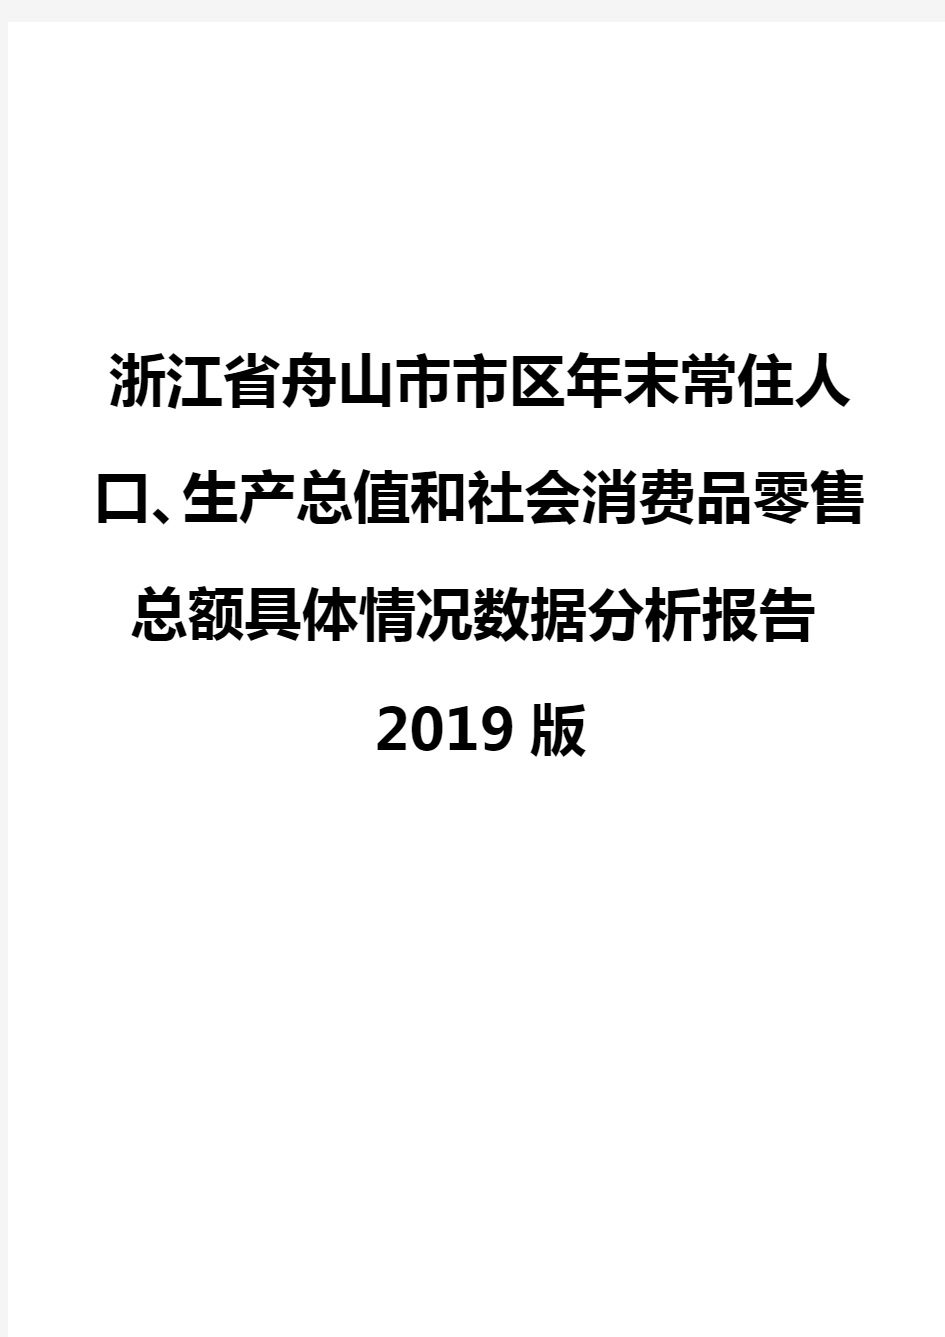 浙江省舟山市市区年末常住人口、生产总值和社会消费品零售总额具体情况数据分析报告2019版